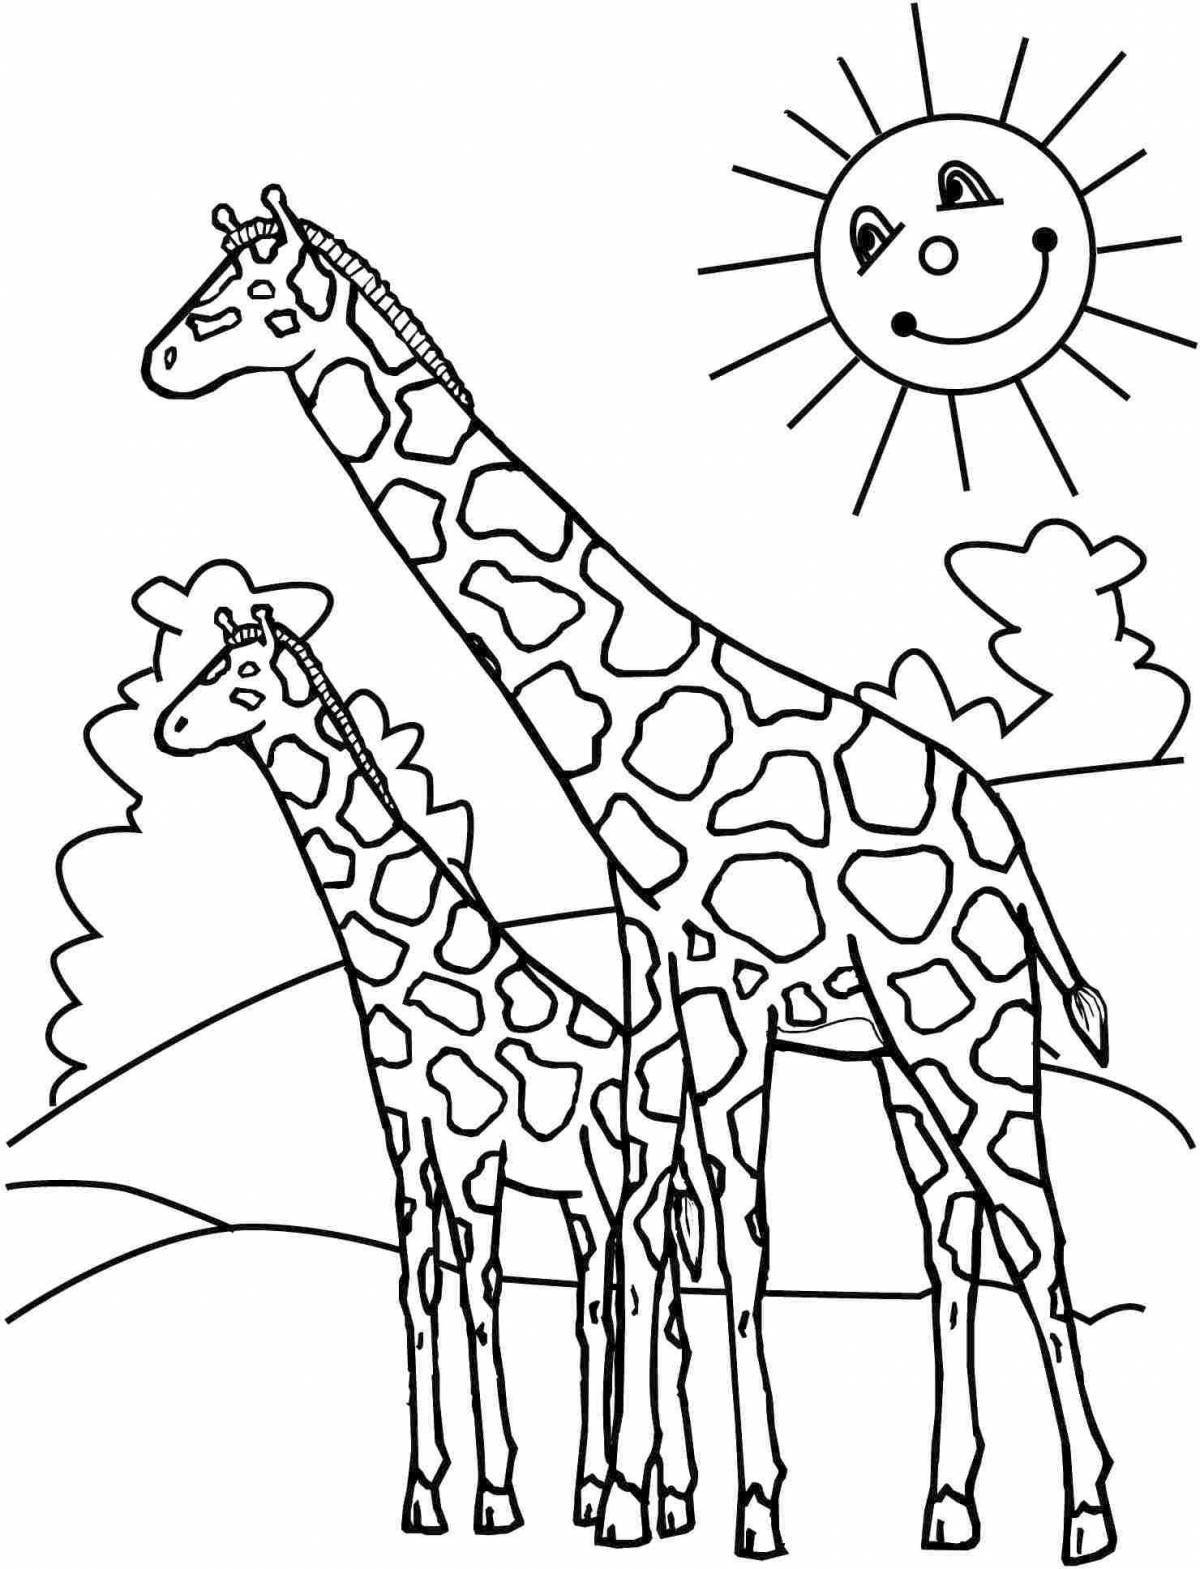 Креативный рисунок жирафа для детей